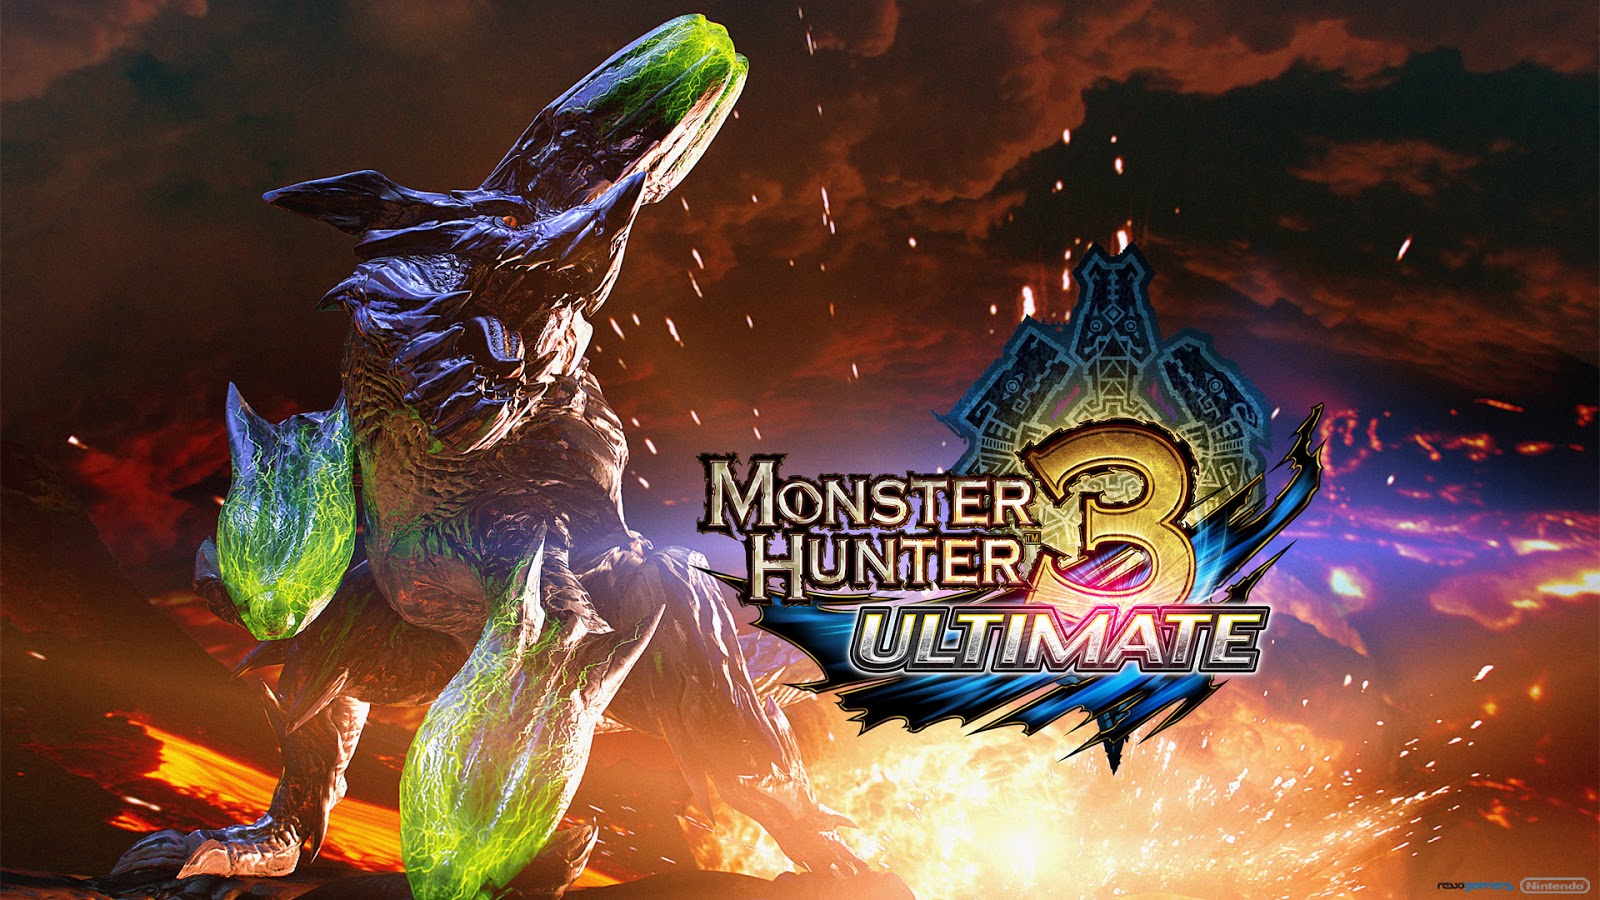 Monster hunter 3 ultimate rathalos wallpaper | danasrfj.top